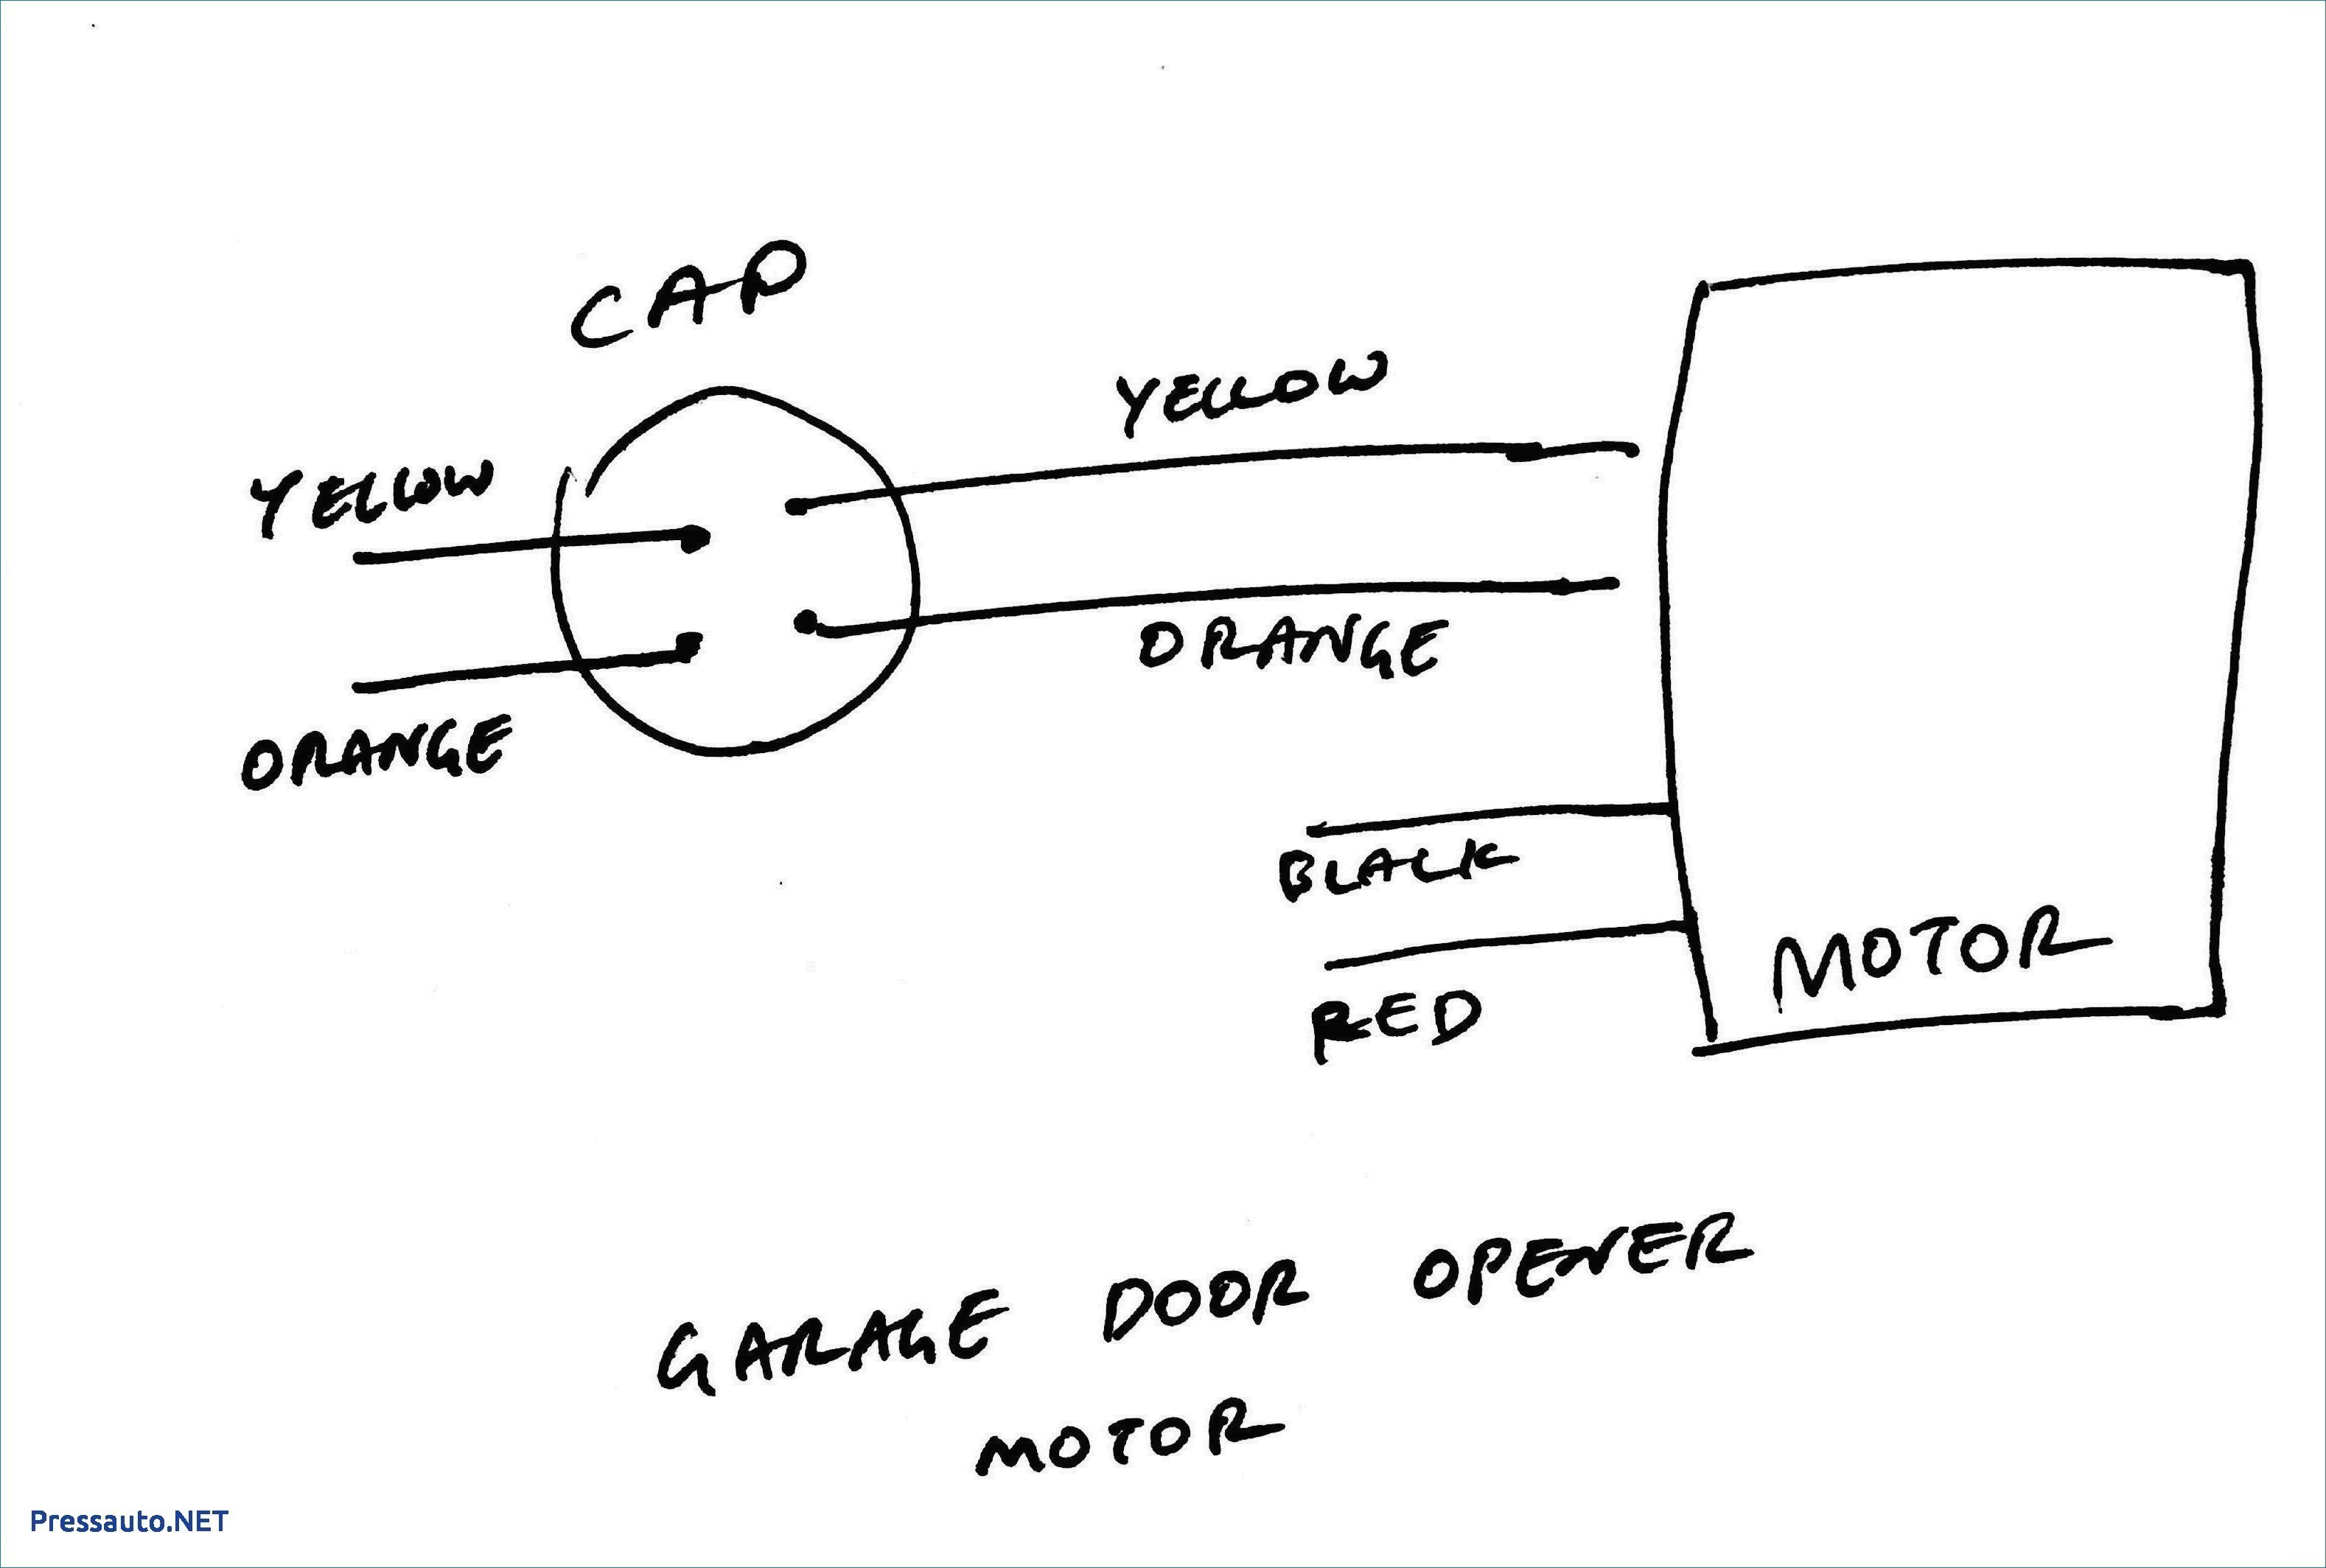 3 Speed Electric Fan Motor Wiring Diagram New Electric Fan Wiring Diagram with Capacitor Archives Wheathill